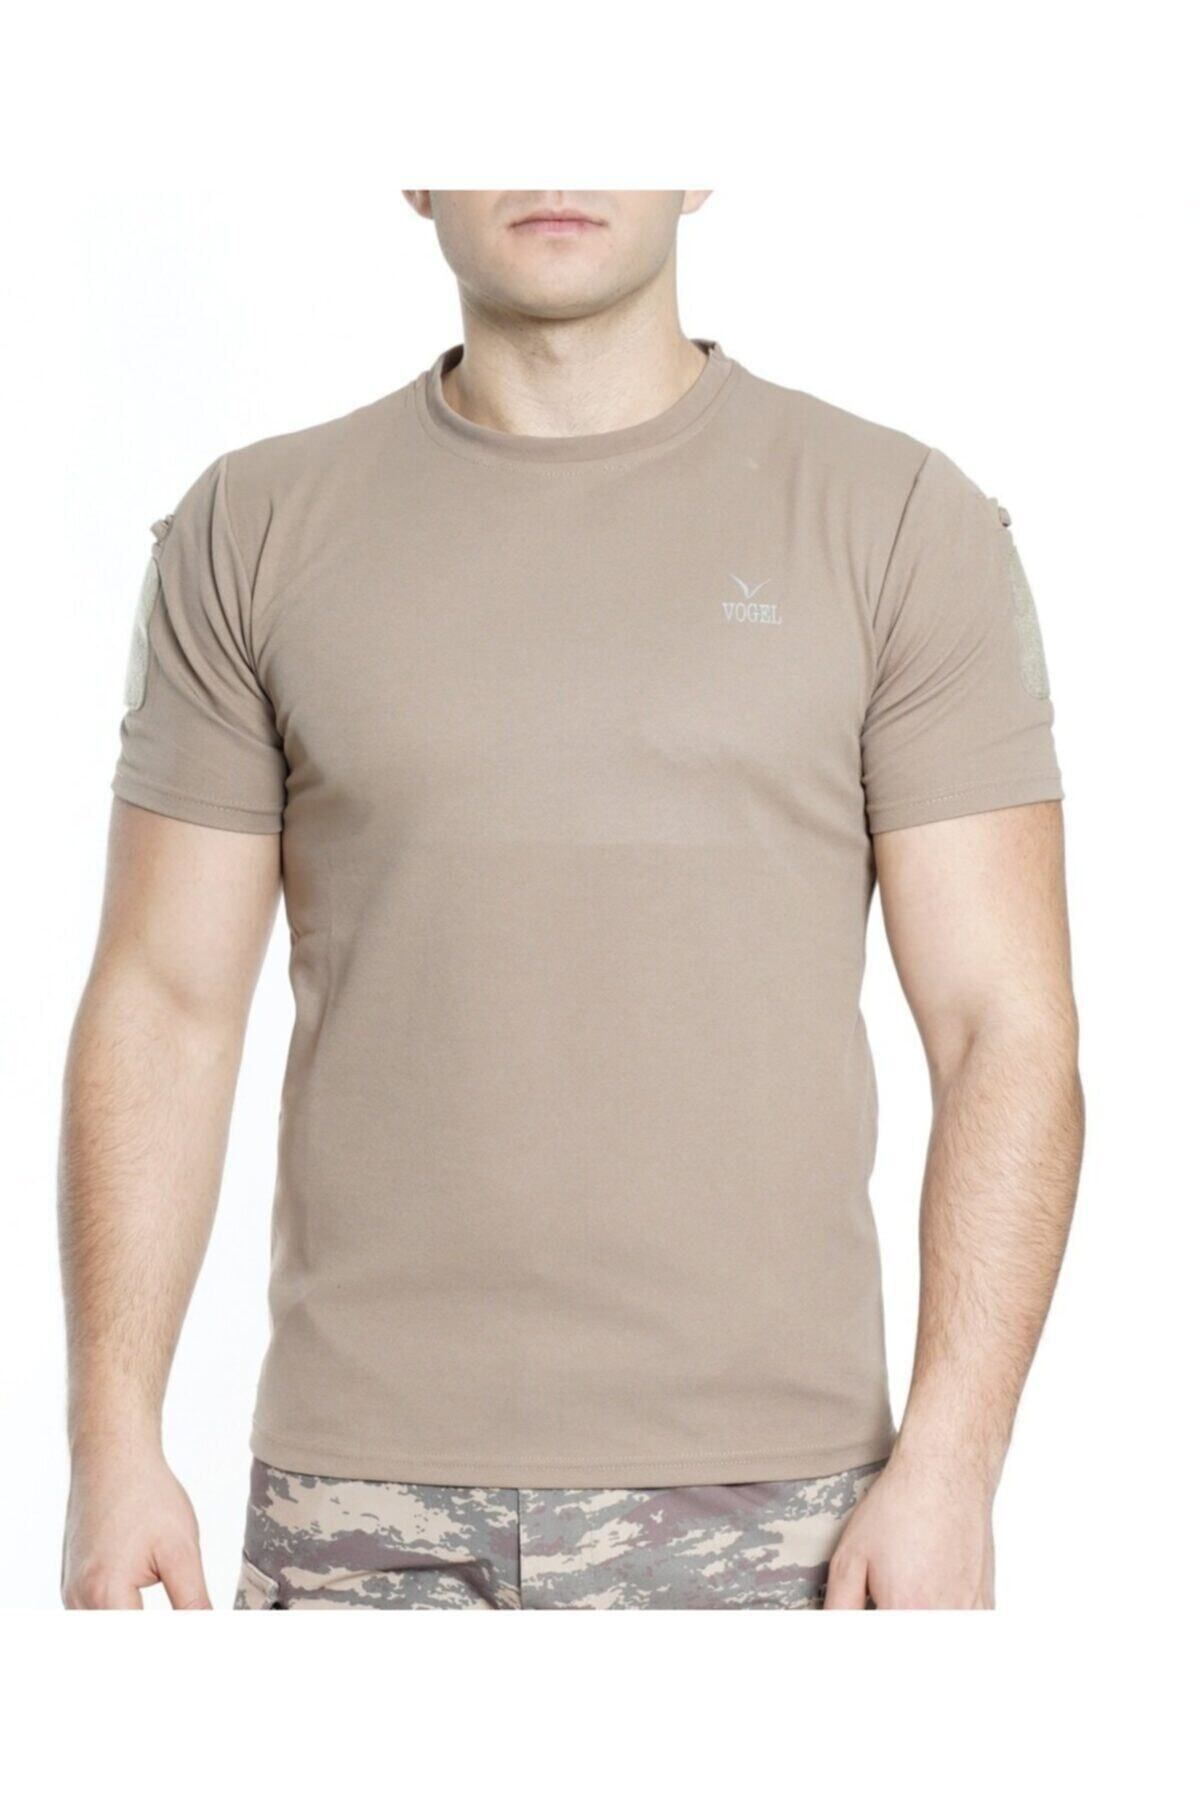 Vogel Erkek Bej Kısa Kollu T-Shirt